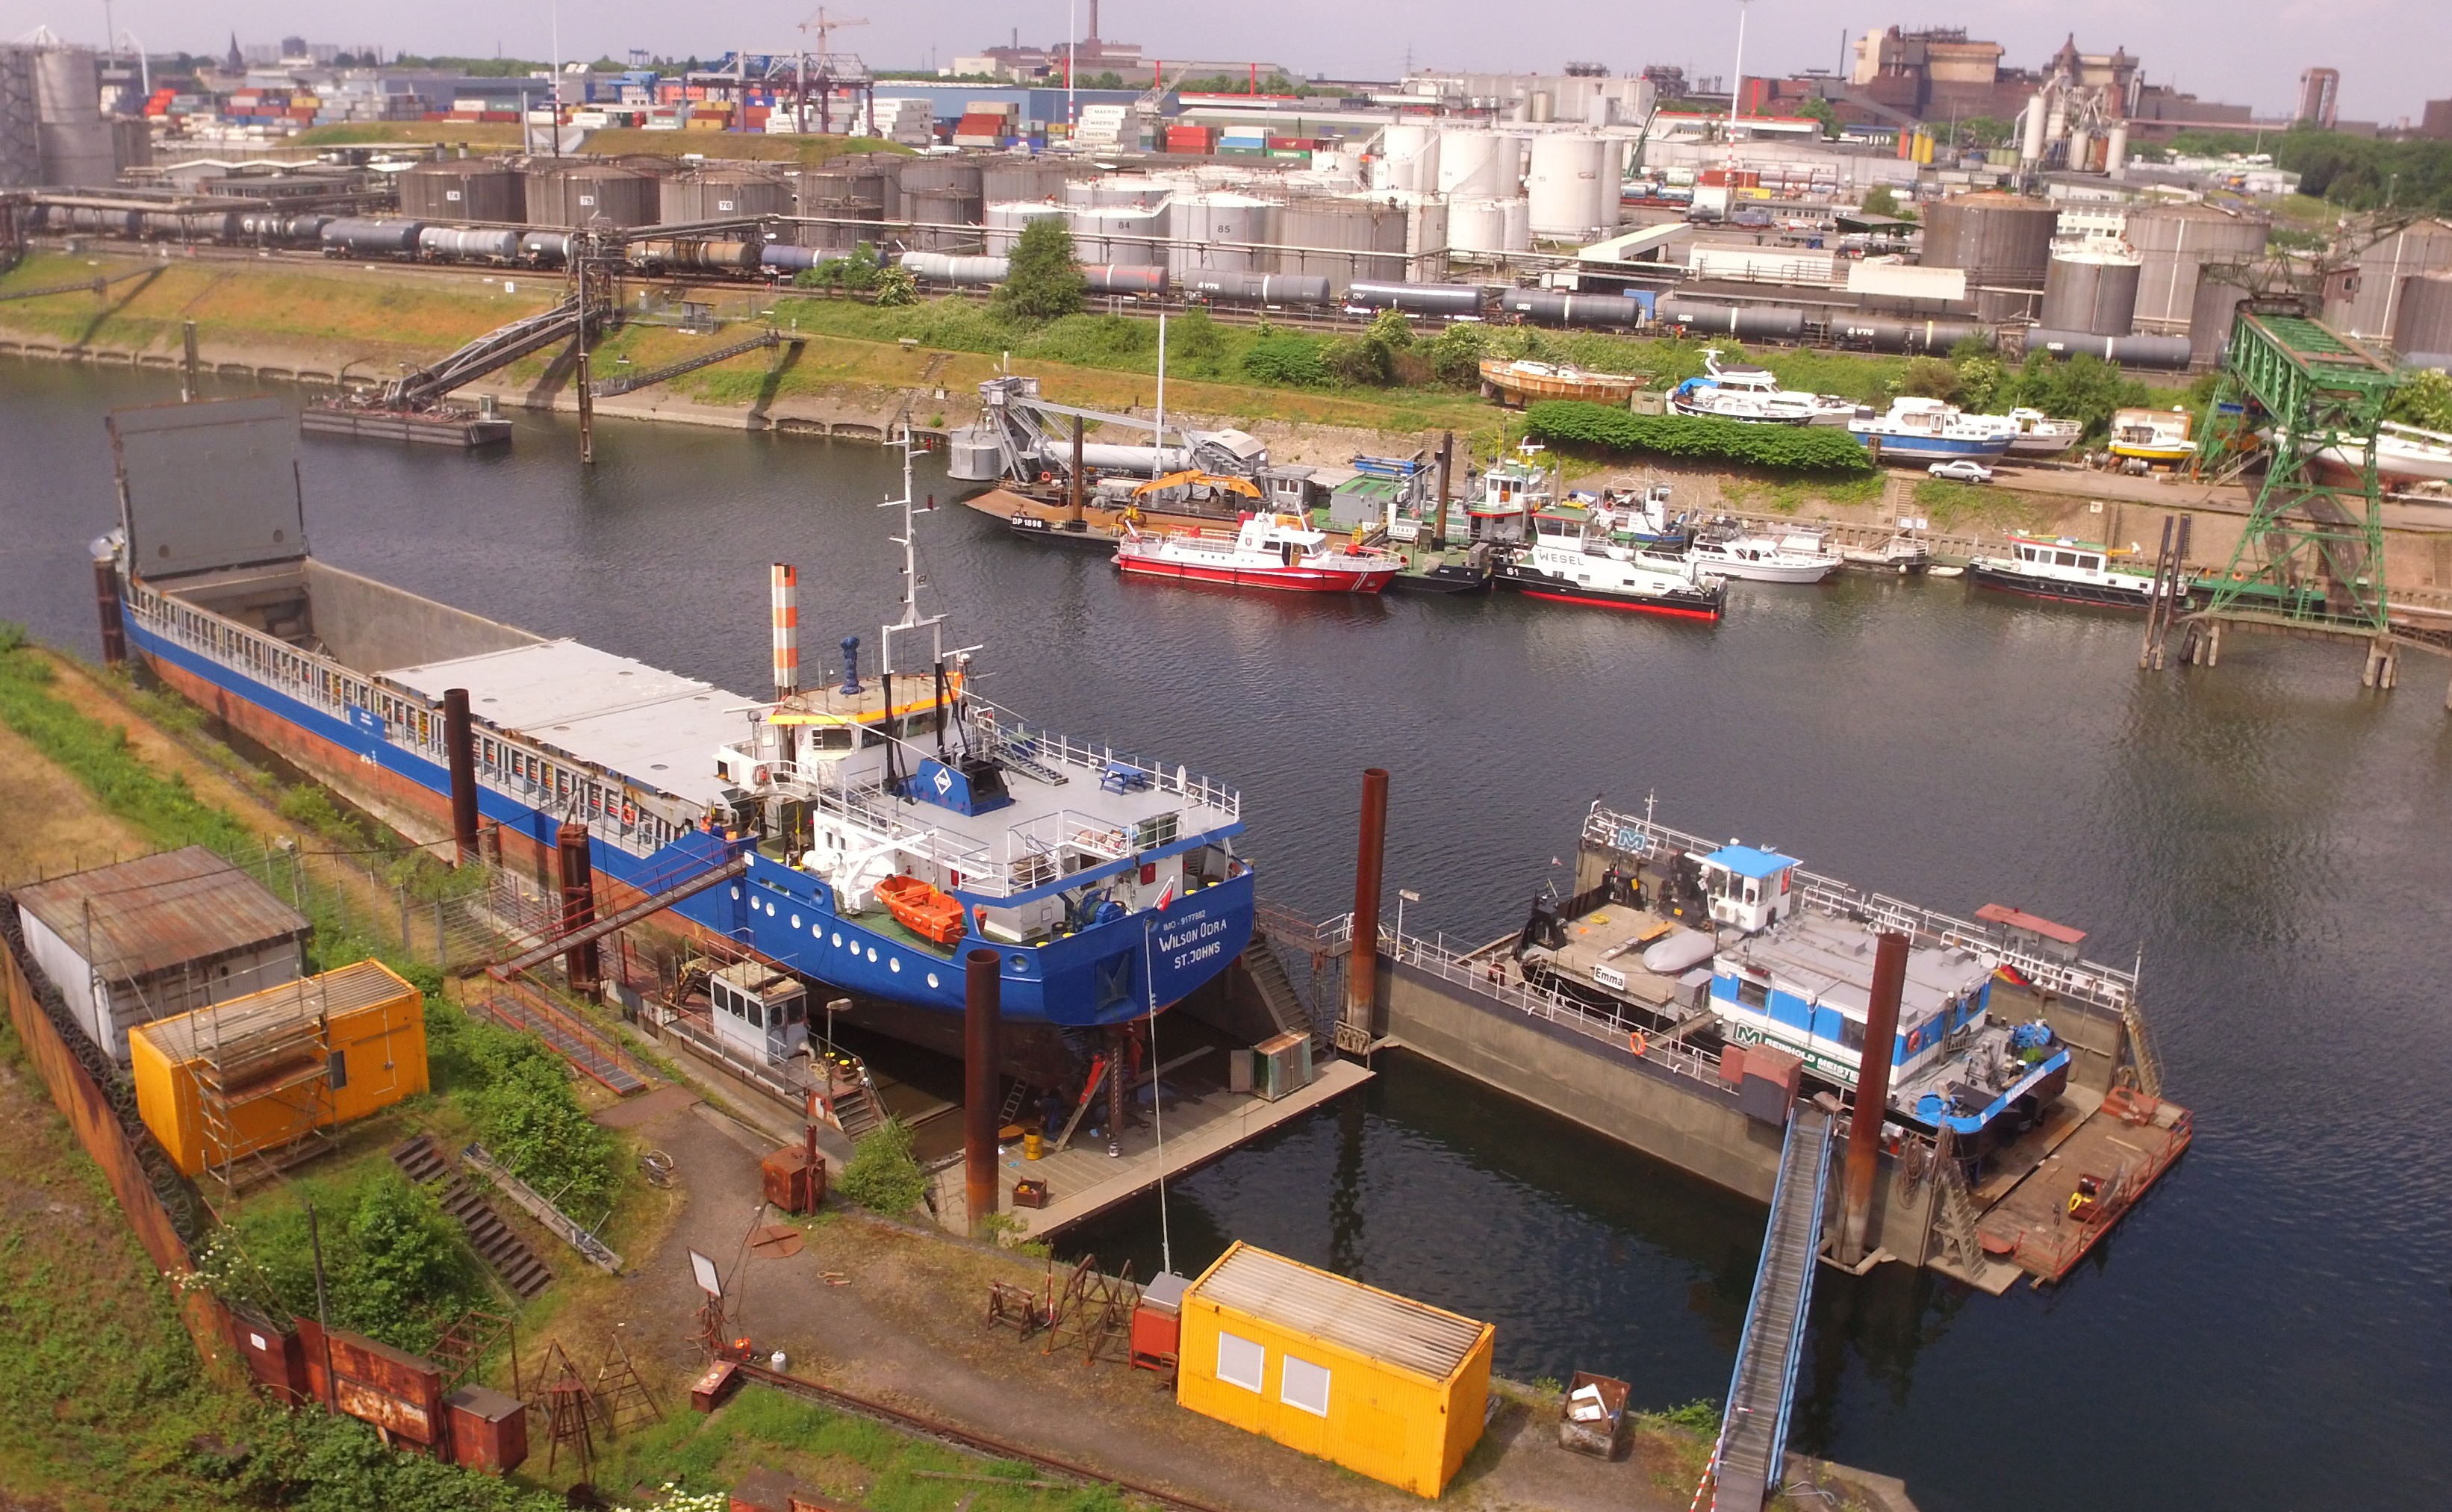 Bilder der Docks